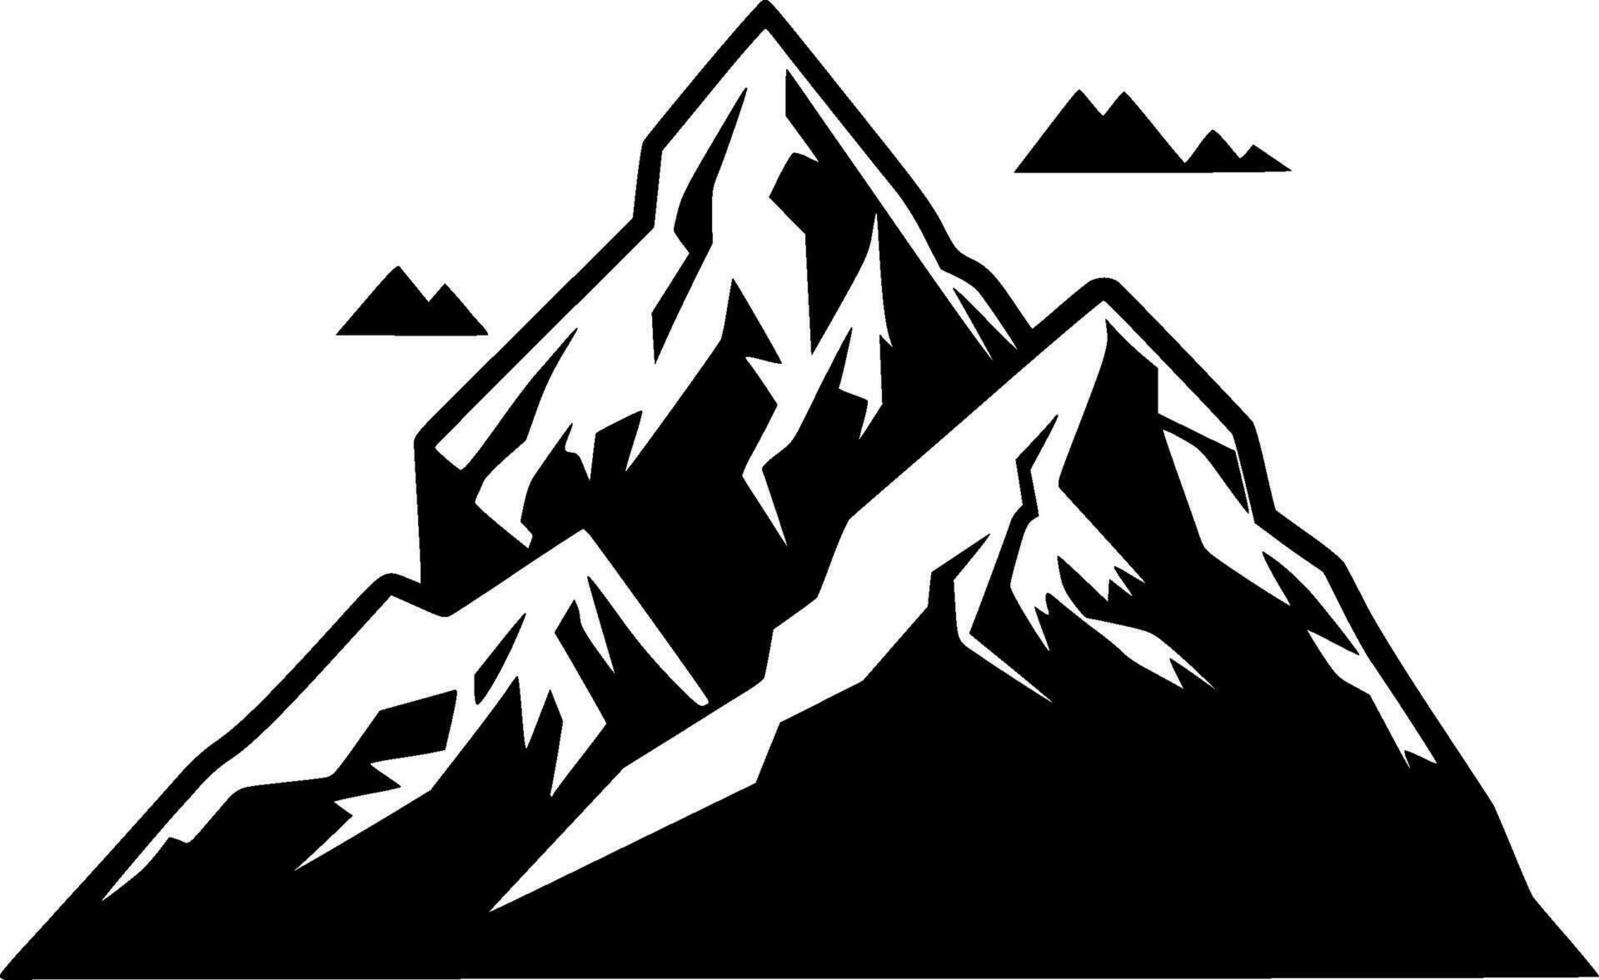 montagna gamma, nero e bianca vettore illustrazione